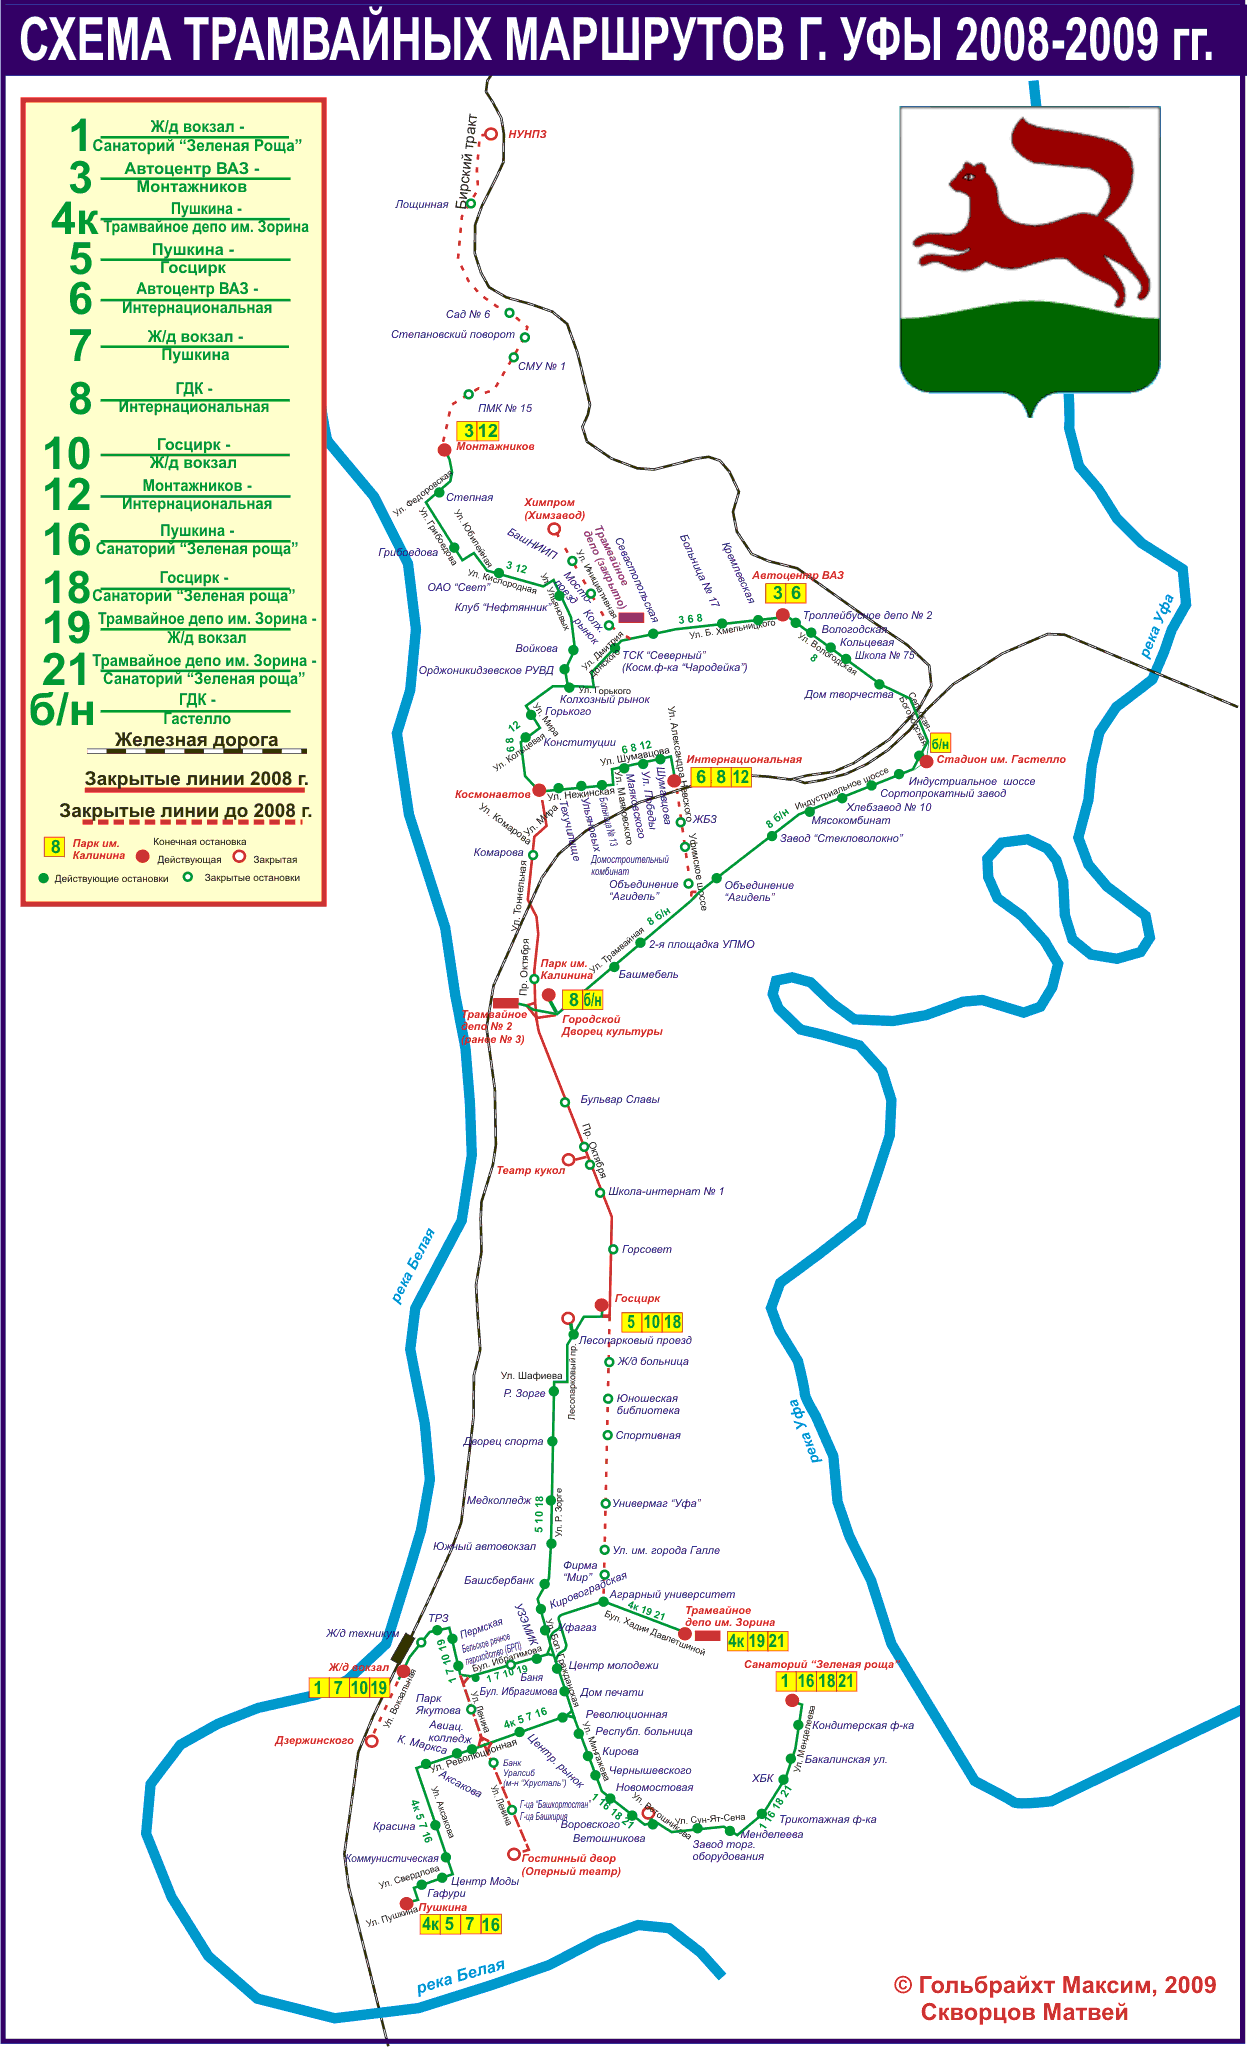 Схема трамвайной сети Уфы в 2009 г.. Автор: Максим Гольбрайхт